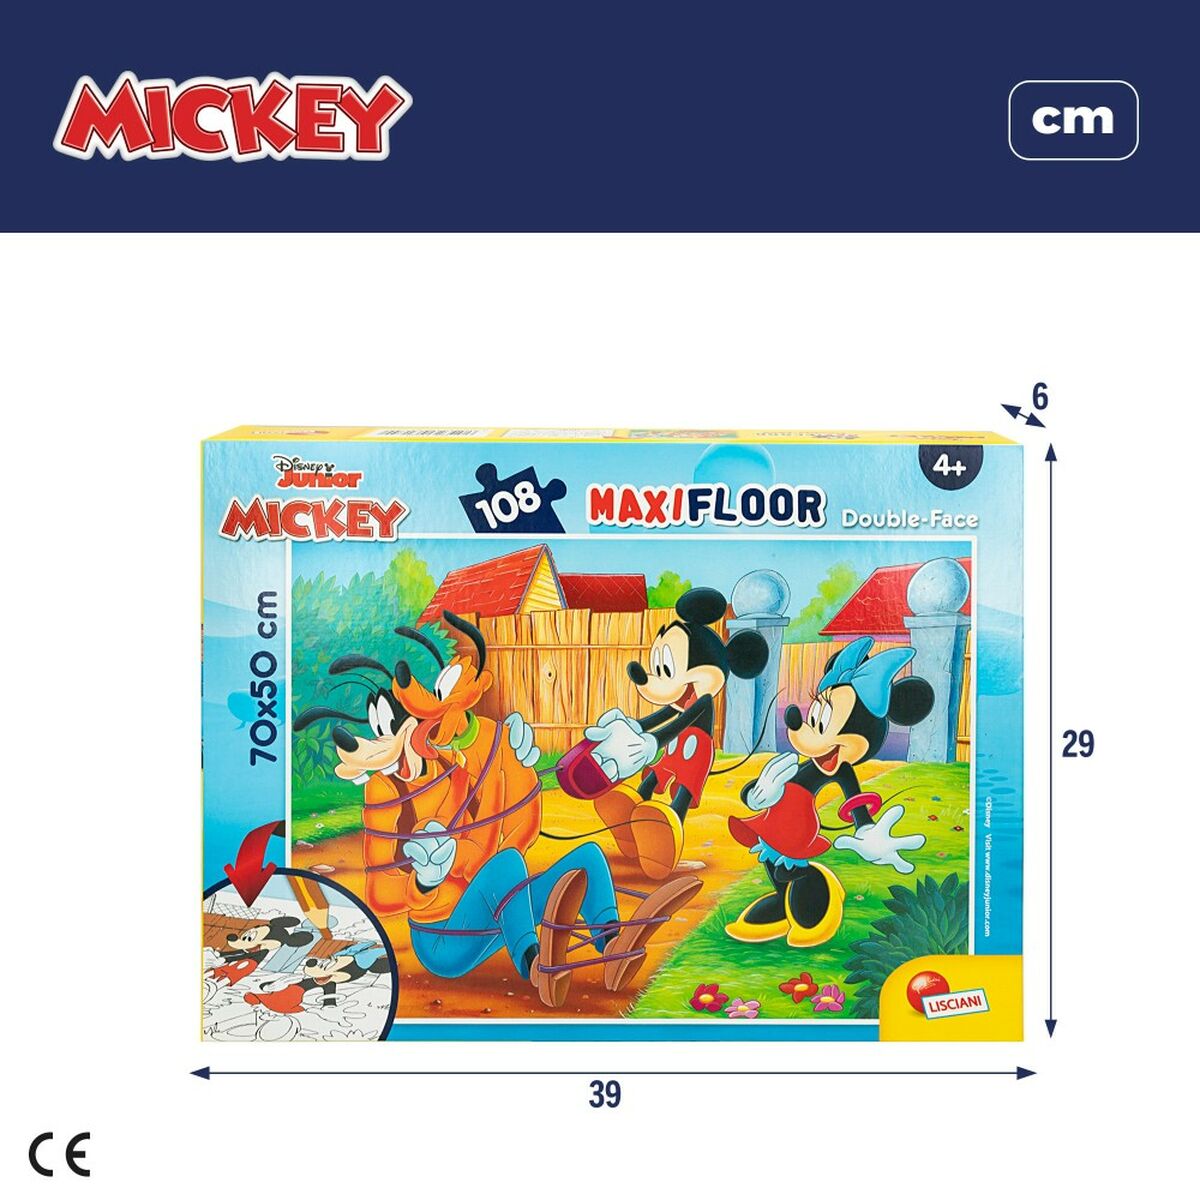 Kinderpuzzel Mickey Mouse Dubbelzijdig 108 Onderdelen 70 x 1,5 x 50 cm (6 Stuks)